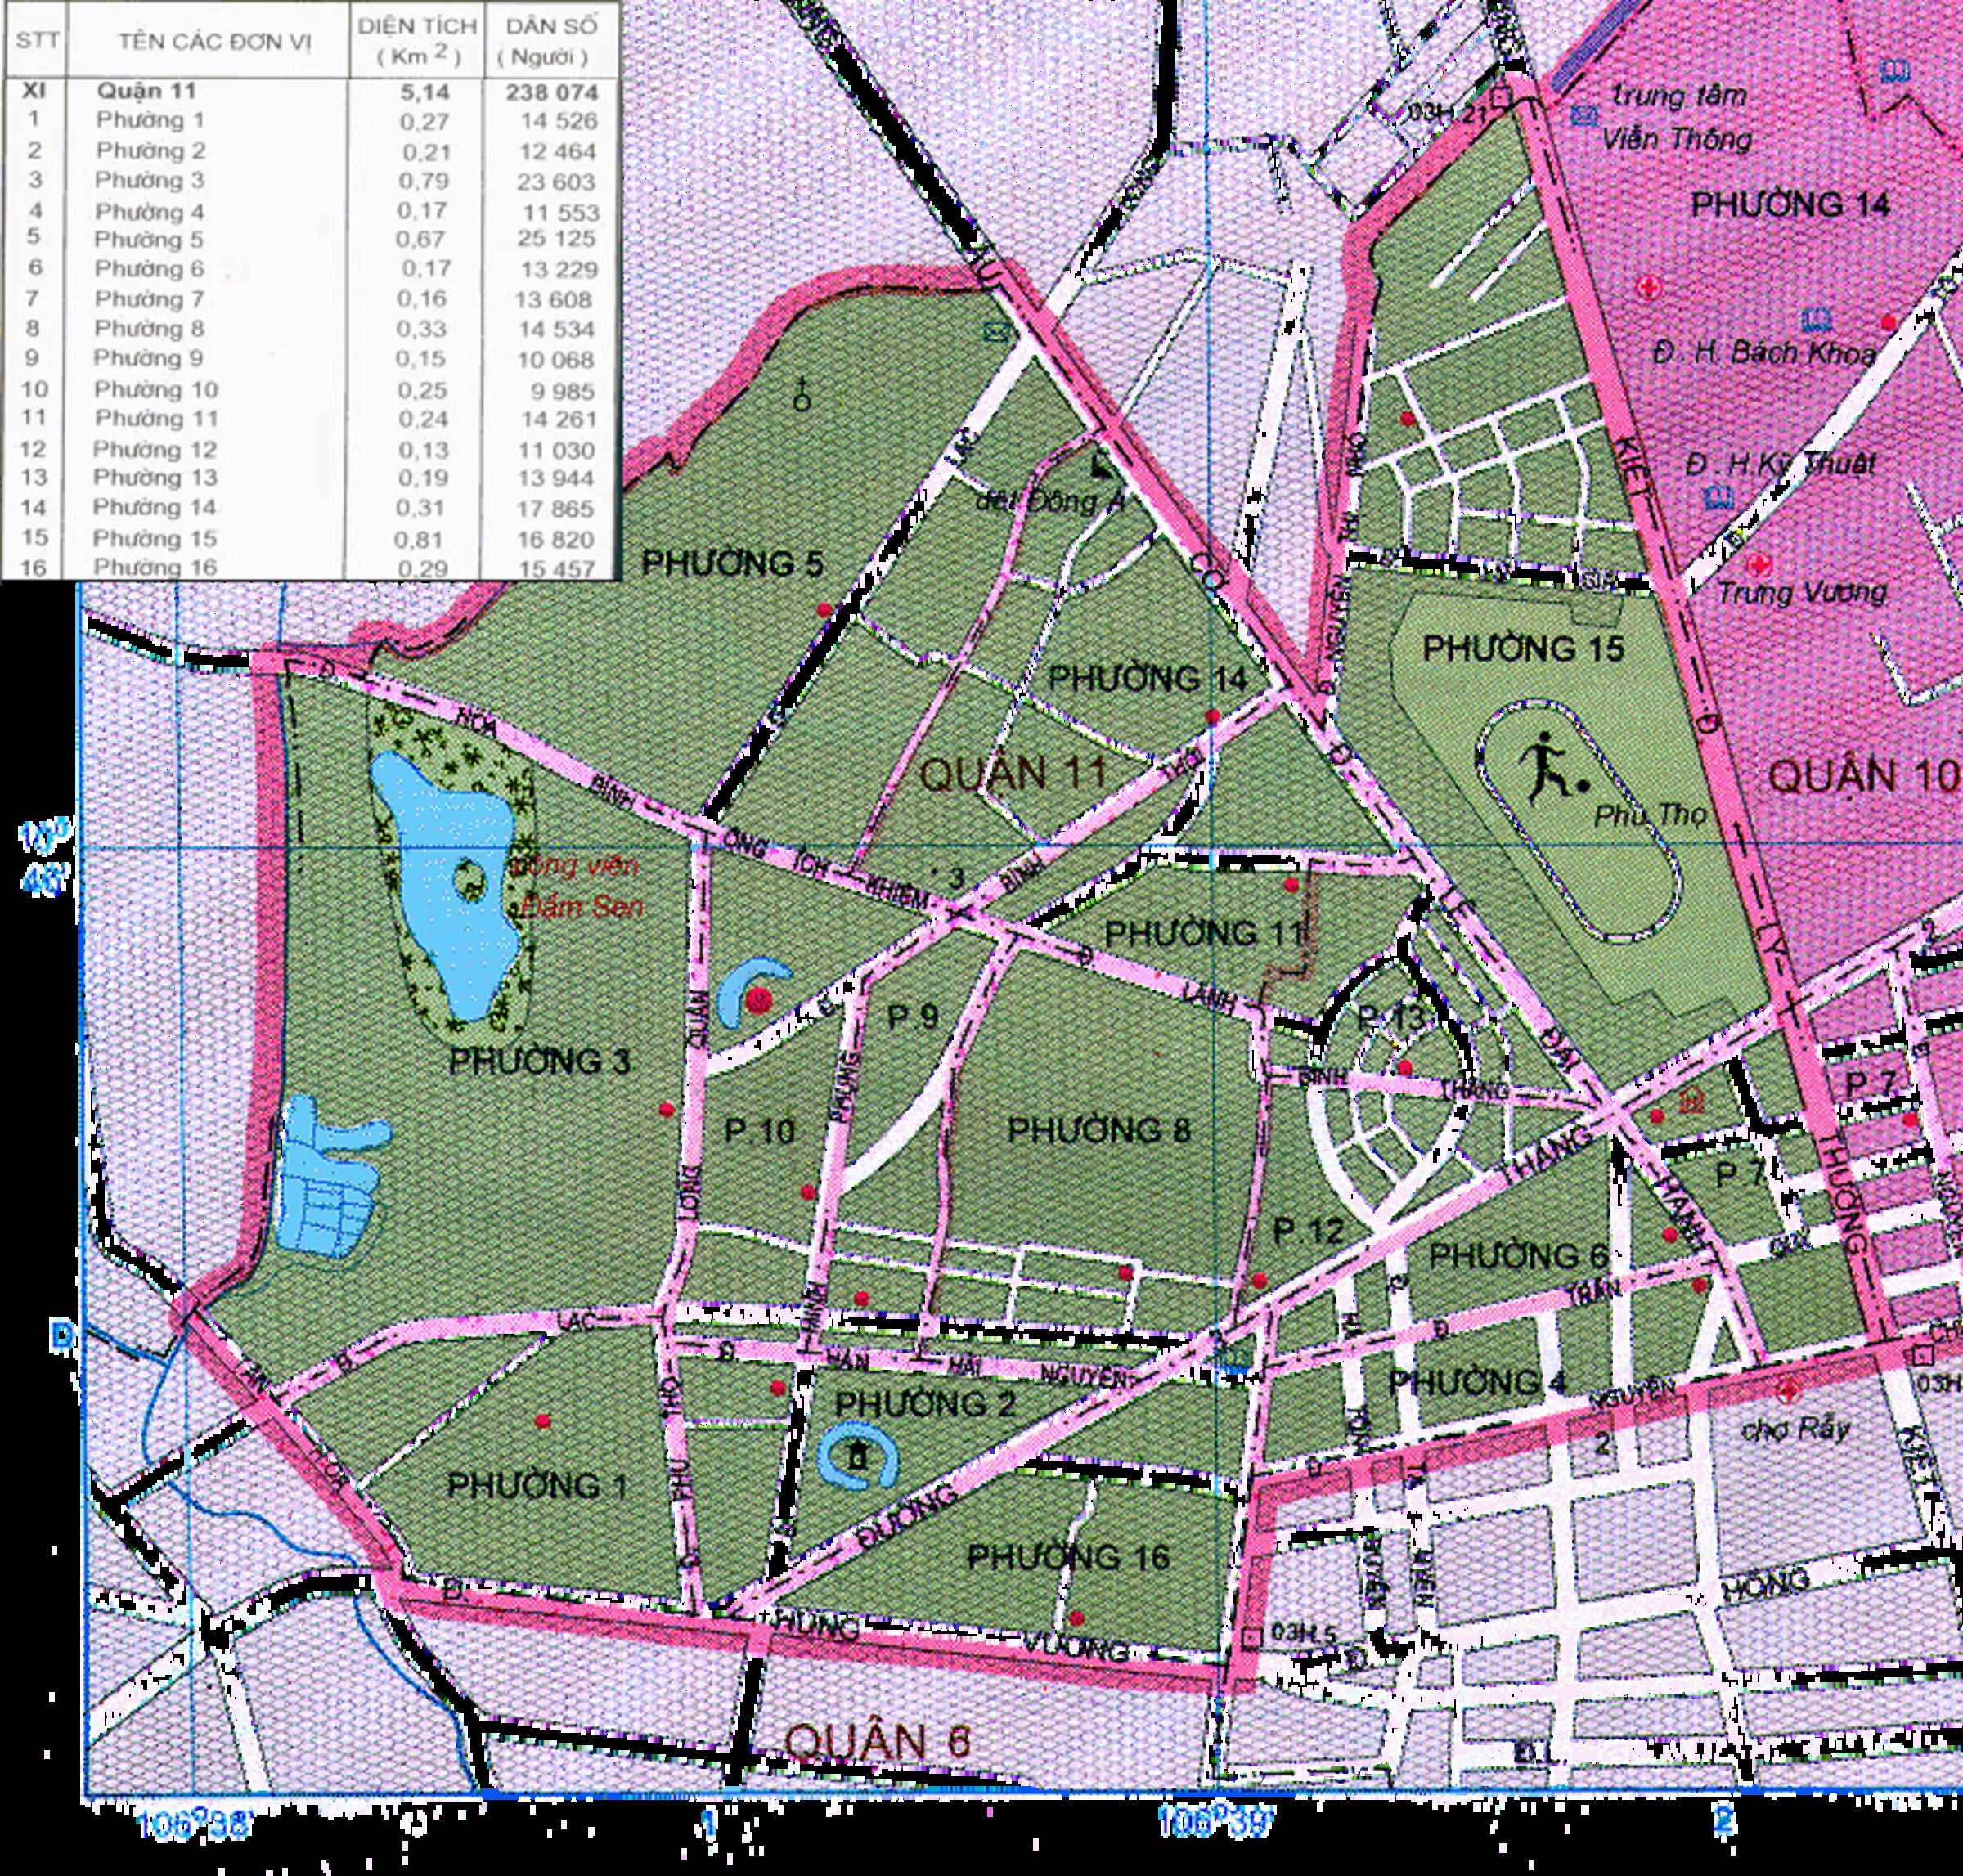 Cập nhật bản đồ
Điều gì quan trọng hơn việc cập nhật bản đồ thường xuyên để có được thông tin chính xác nhất về thành phố Hồ Chí Minh? Với những bản đồ mới nhất và đáng tin cậy nhất, bạn sẽ không bao giờ bỏ lỡ bất kỳ điểm đến thú vị nào tại thành phố này. Hãy cùng chúng tôi tìm hiểu và khám phá thành phố Hồ Chí Minh với những bản đồ chi tiết nhất.